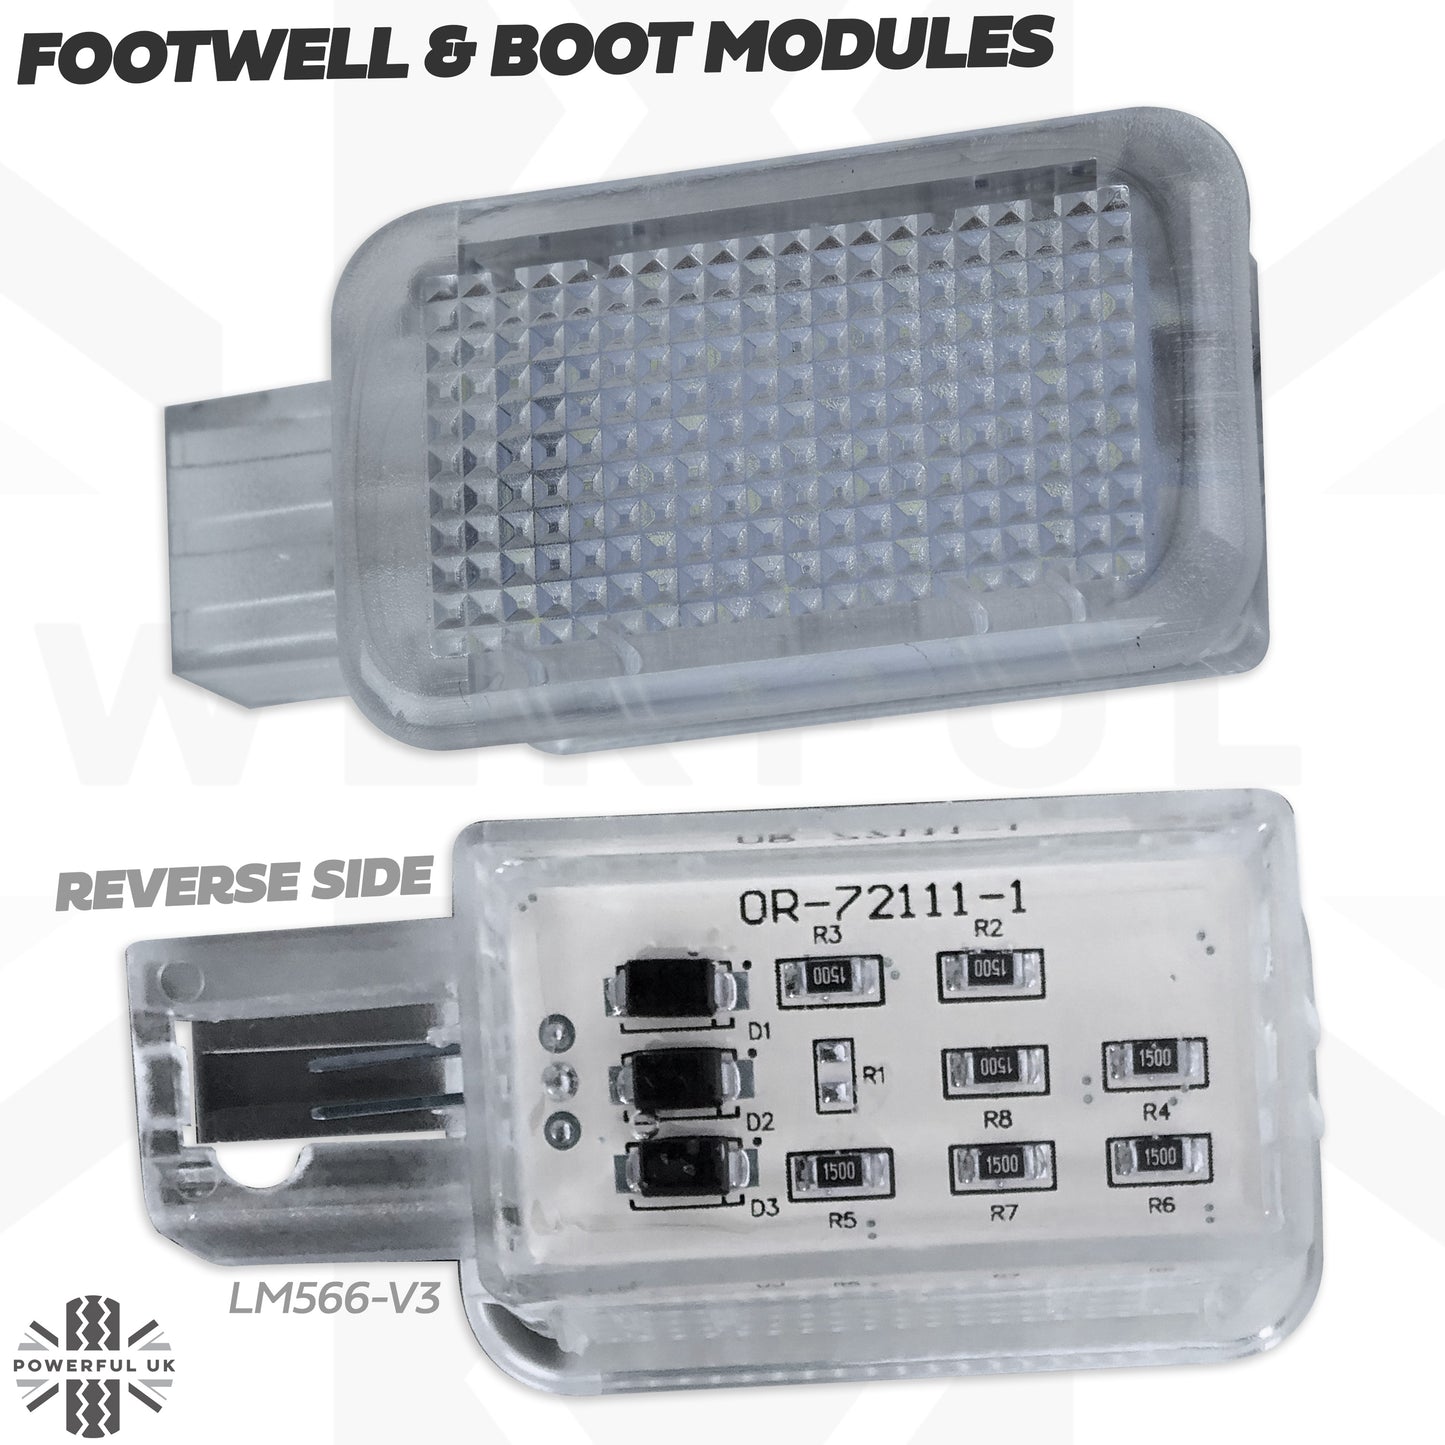 WHITE LED interior boot lamp upgrade for Range Rover L405  (3pc)